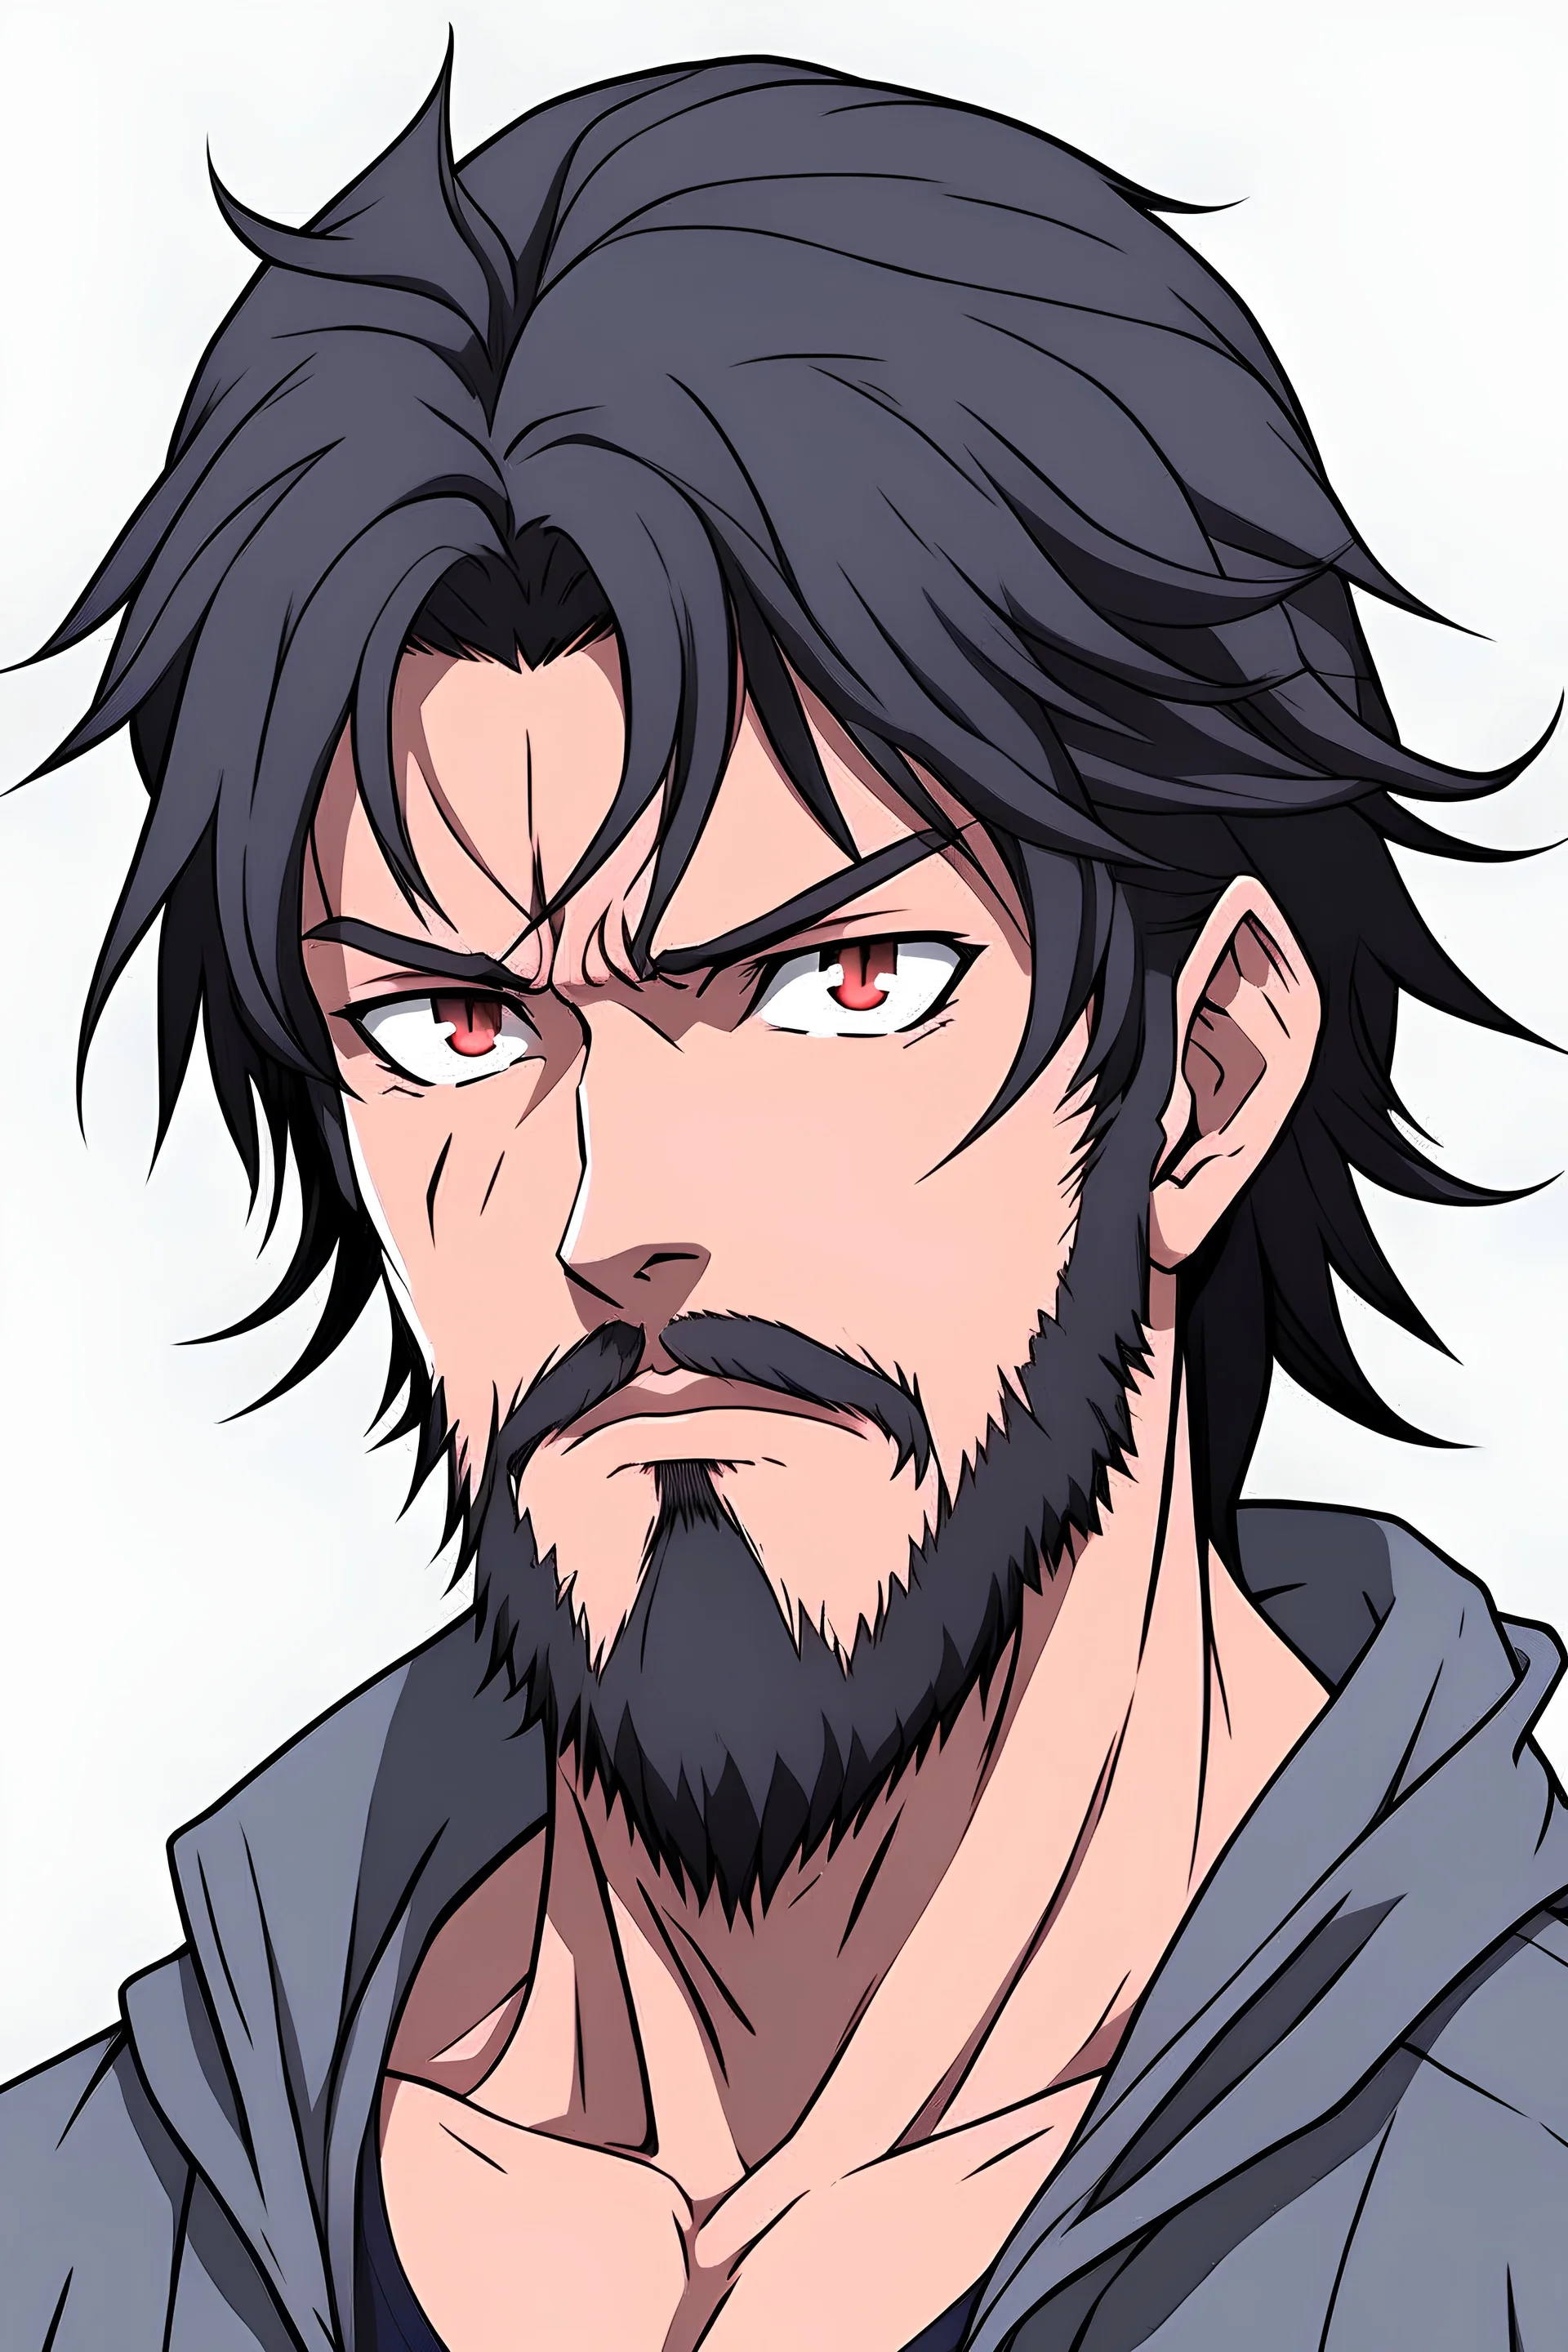 And why can't MCs ever grow a beard : r/Animemes